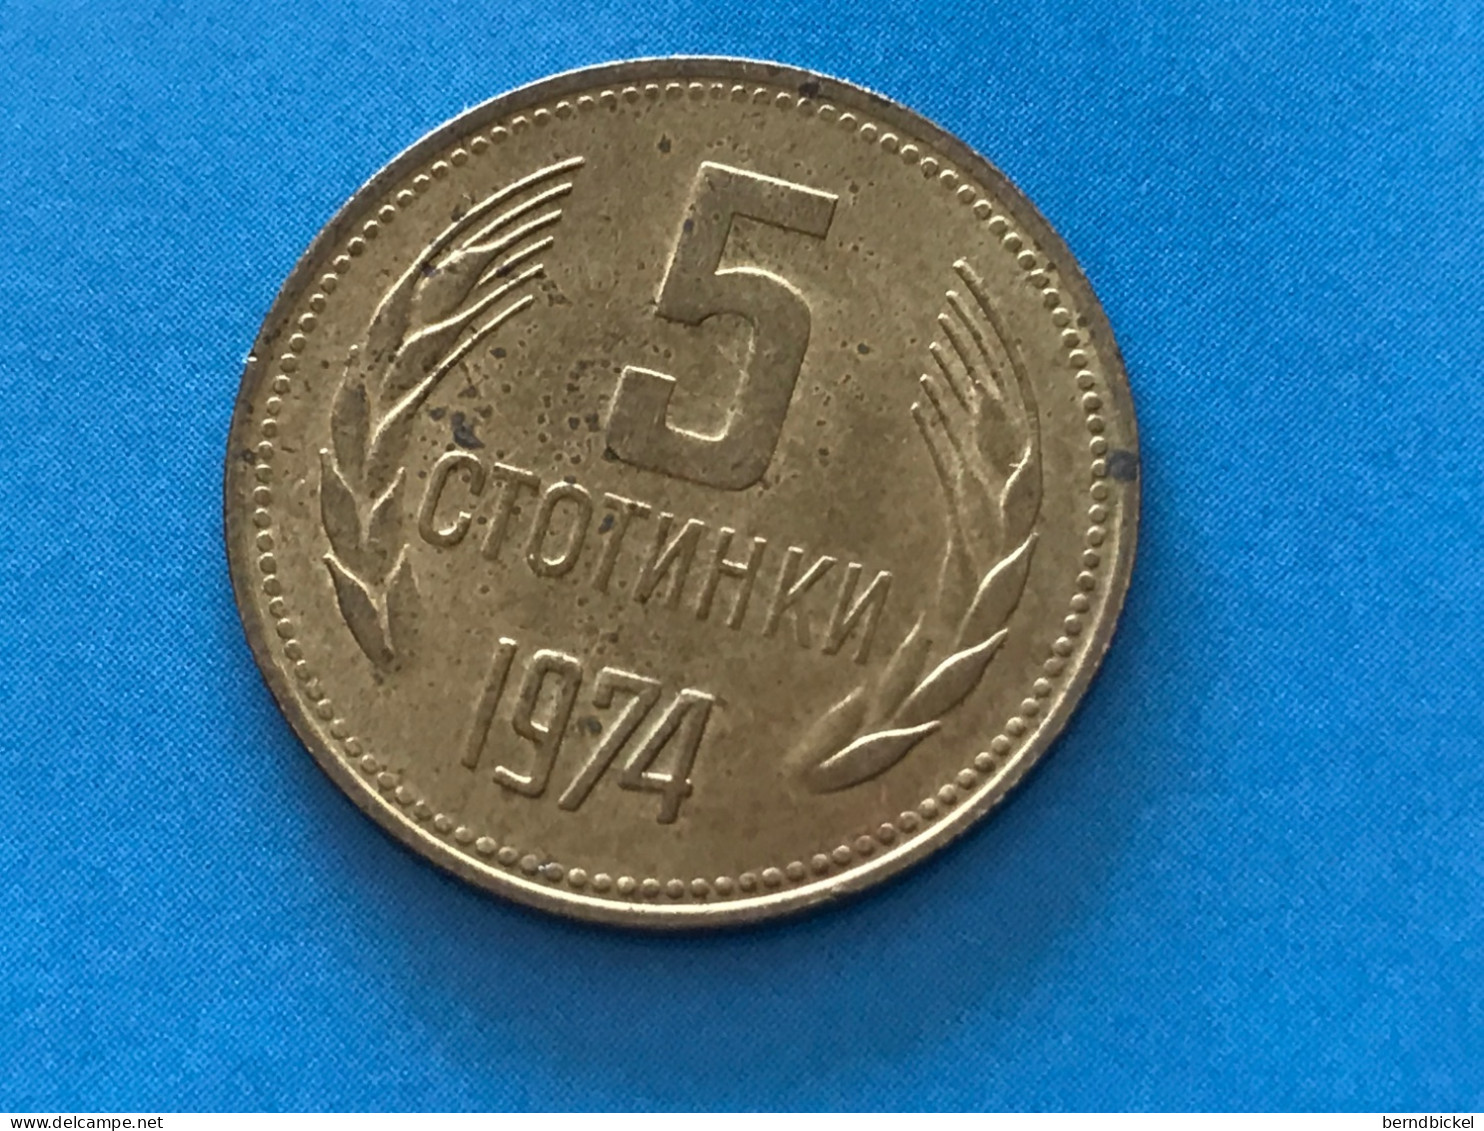 Münze Münzen Umlaufmünze Bulgarien 5 Stotinki 1974 - Bulgarien